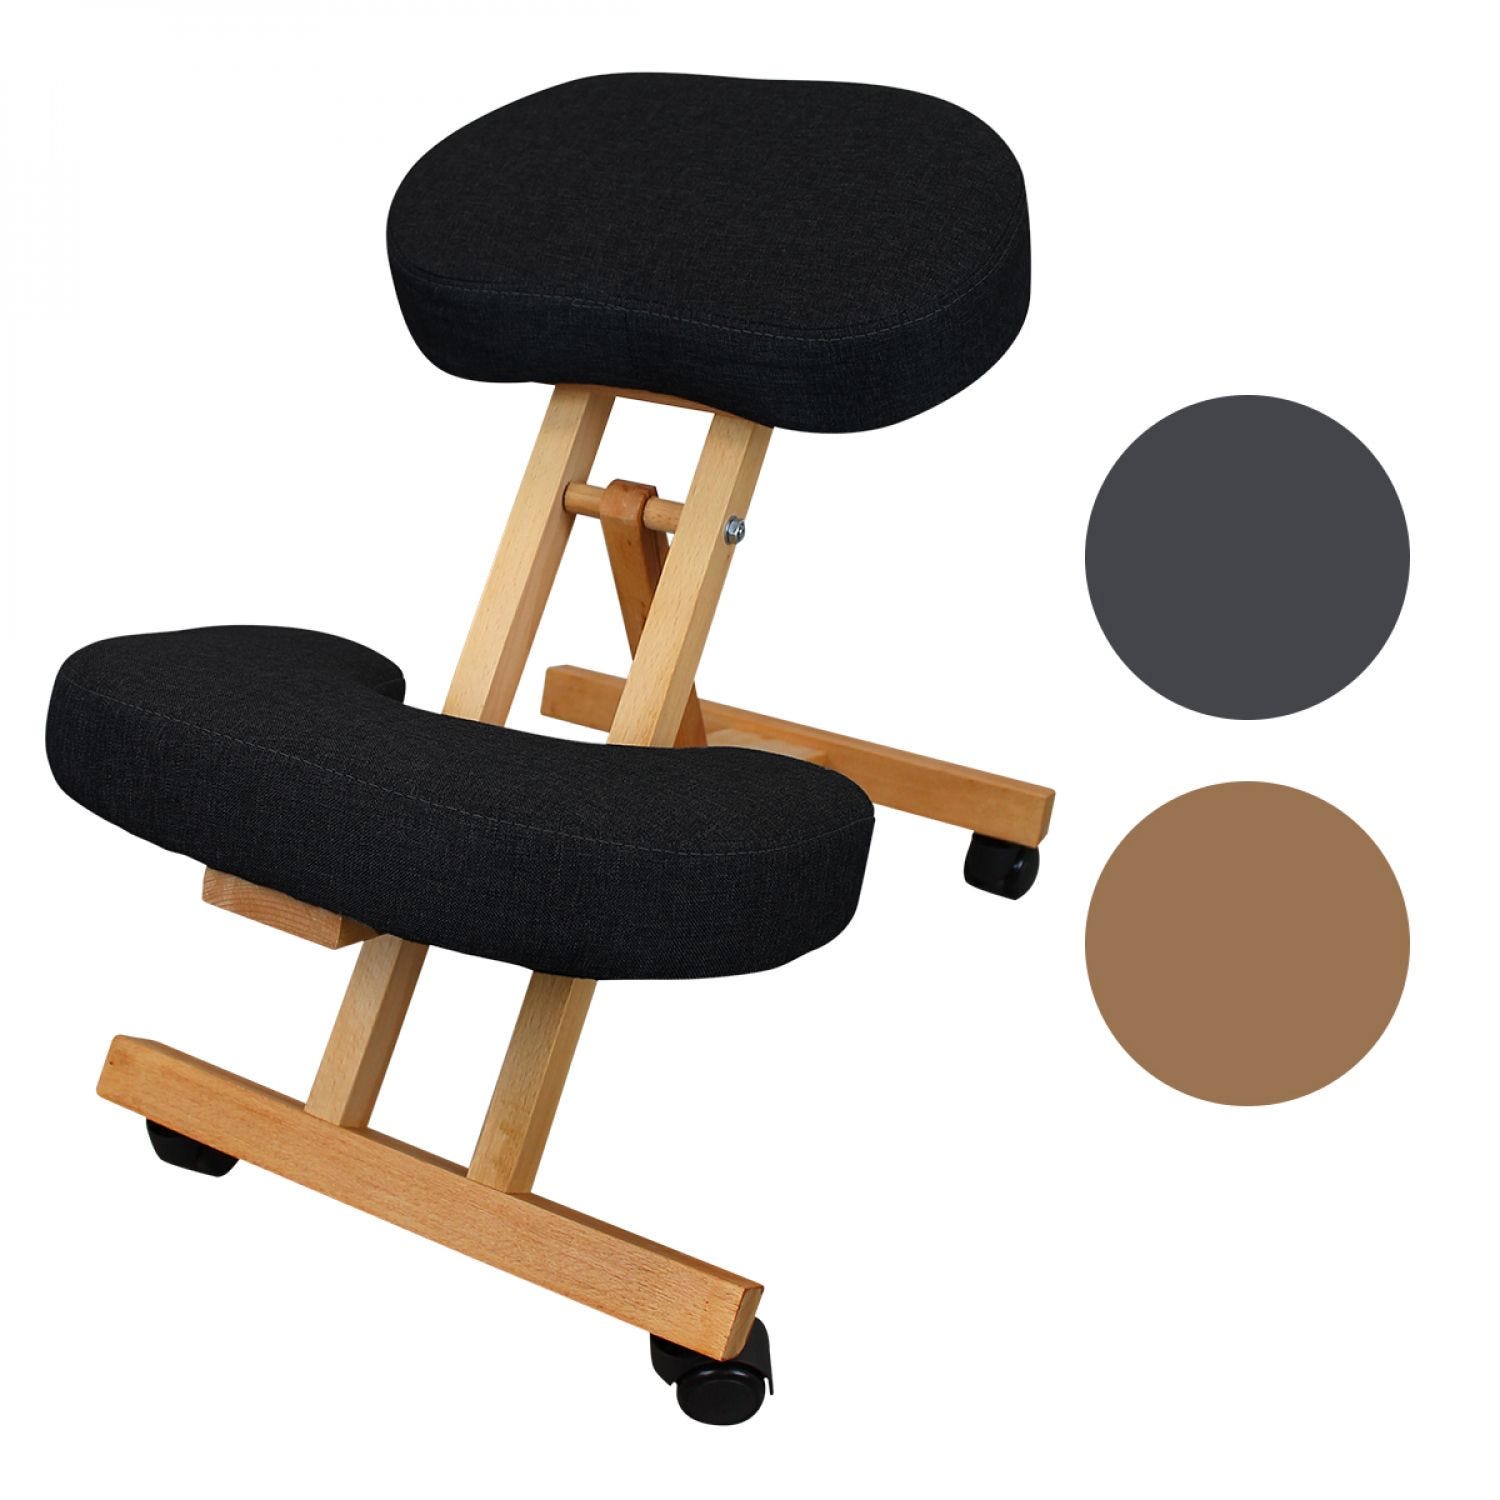 Tabouret, chaise ergonomique, siège assis genoux en bois pliable